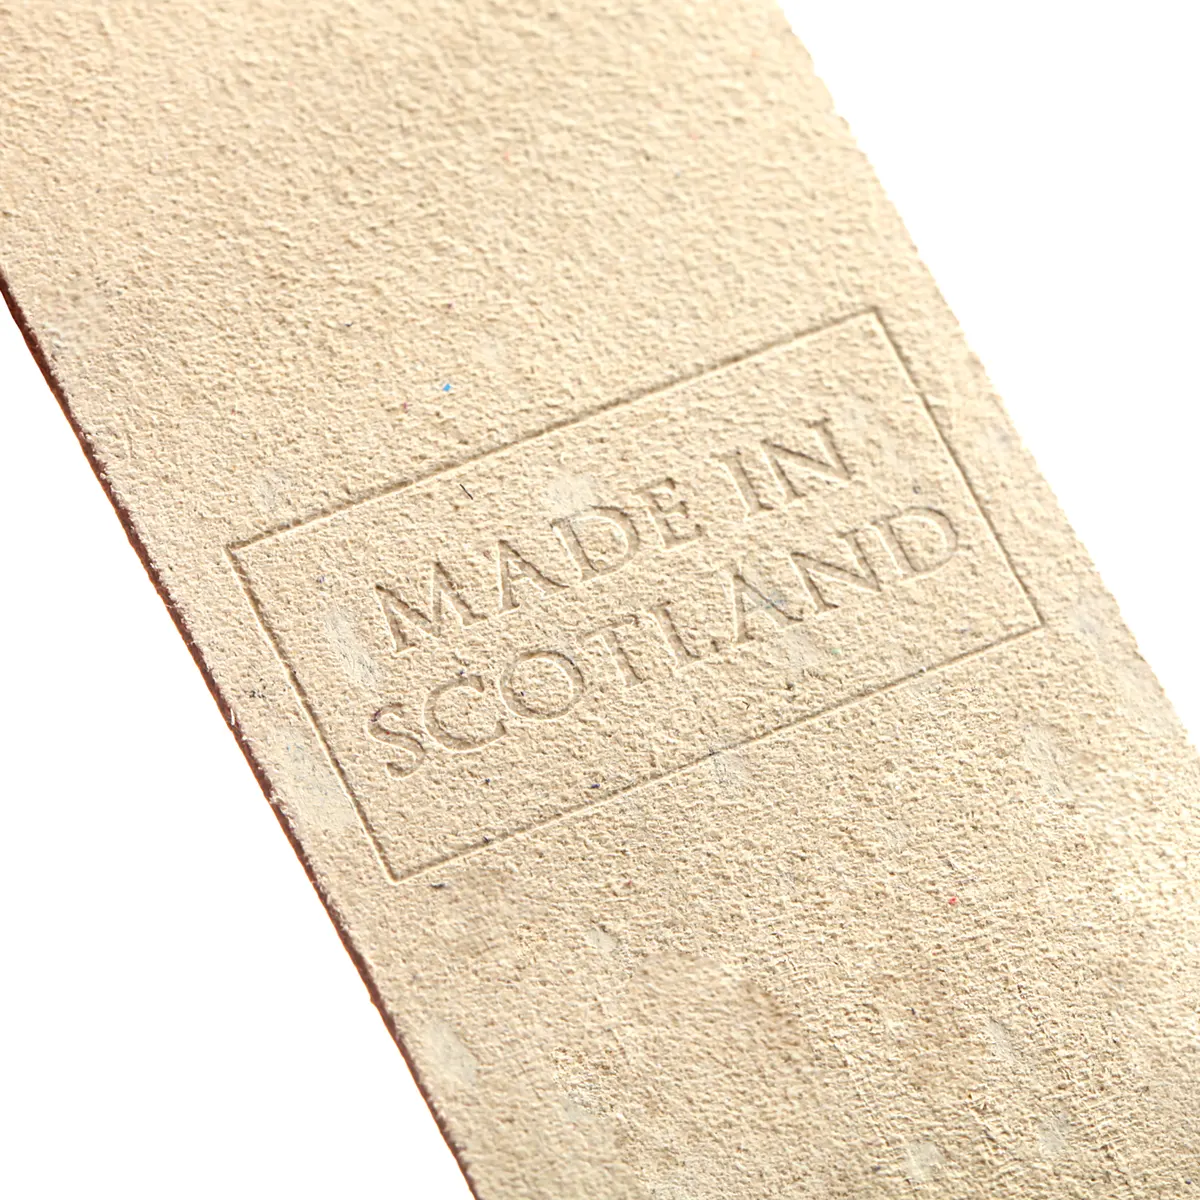 Islay - Lesezeichen aus Leder in Creme - Made in Scotland